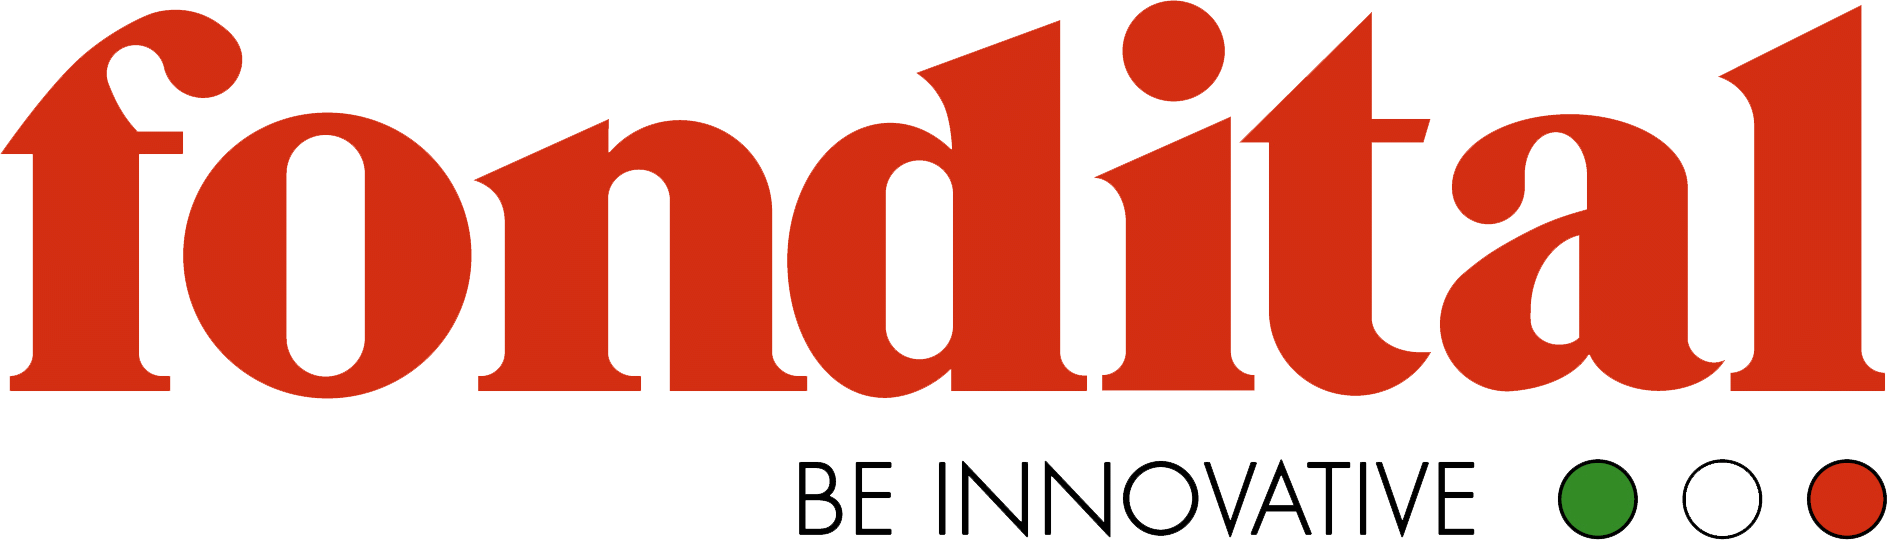 logo Fondital be innovate háttér nélkül